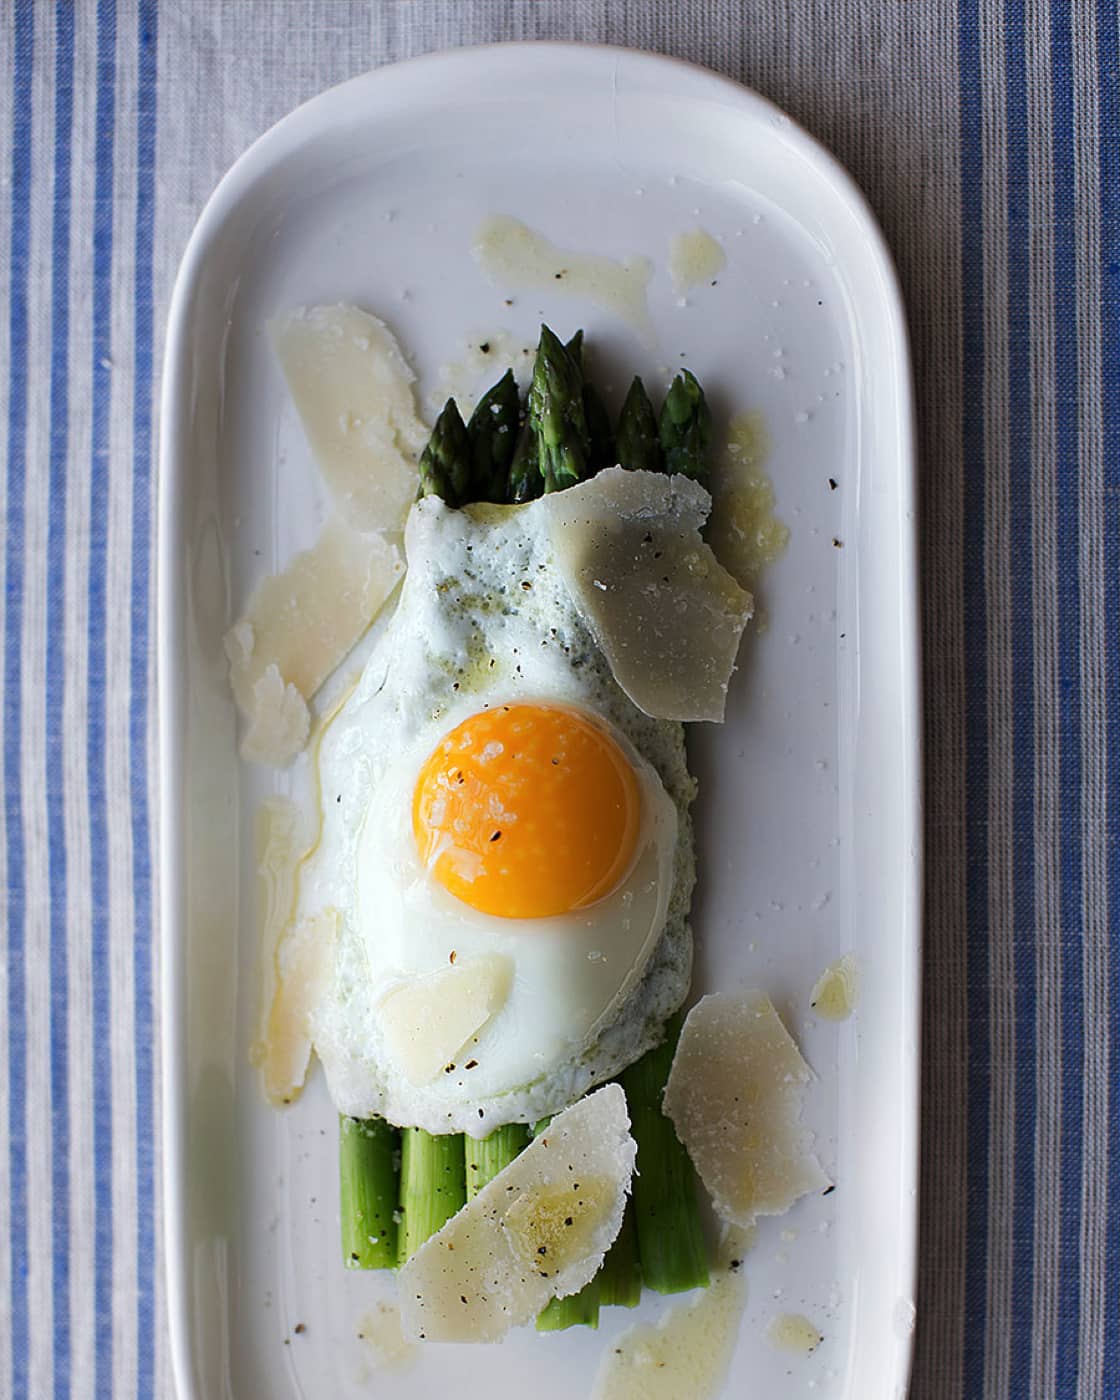 Sautéed asparagus with eggs